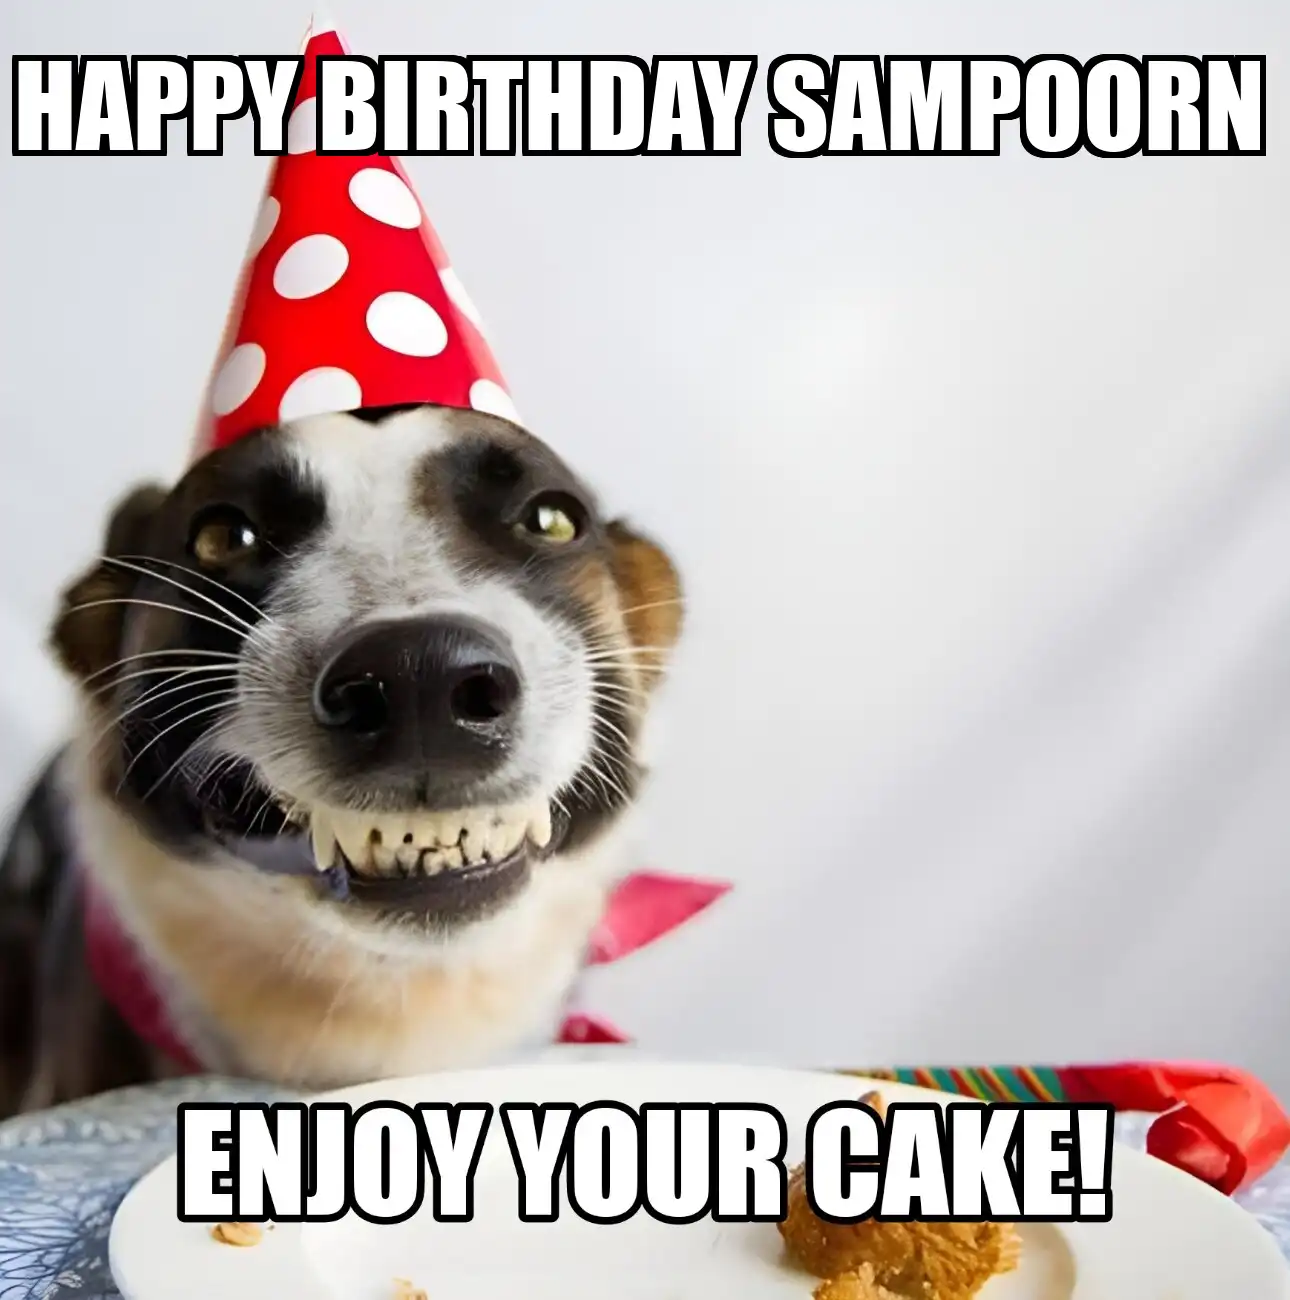 Happy Birthday Sampoorn Enjoy Your Cake Dog Meme